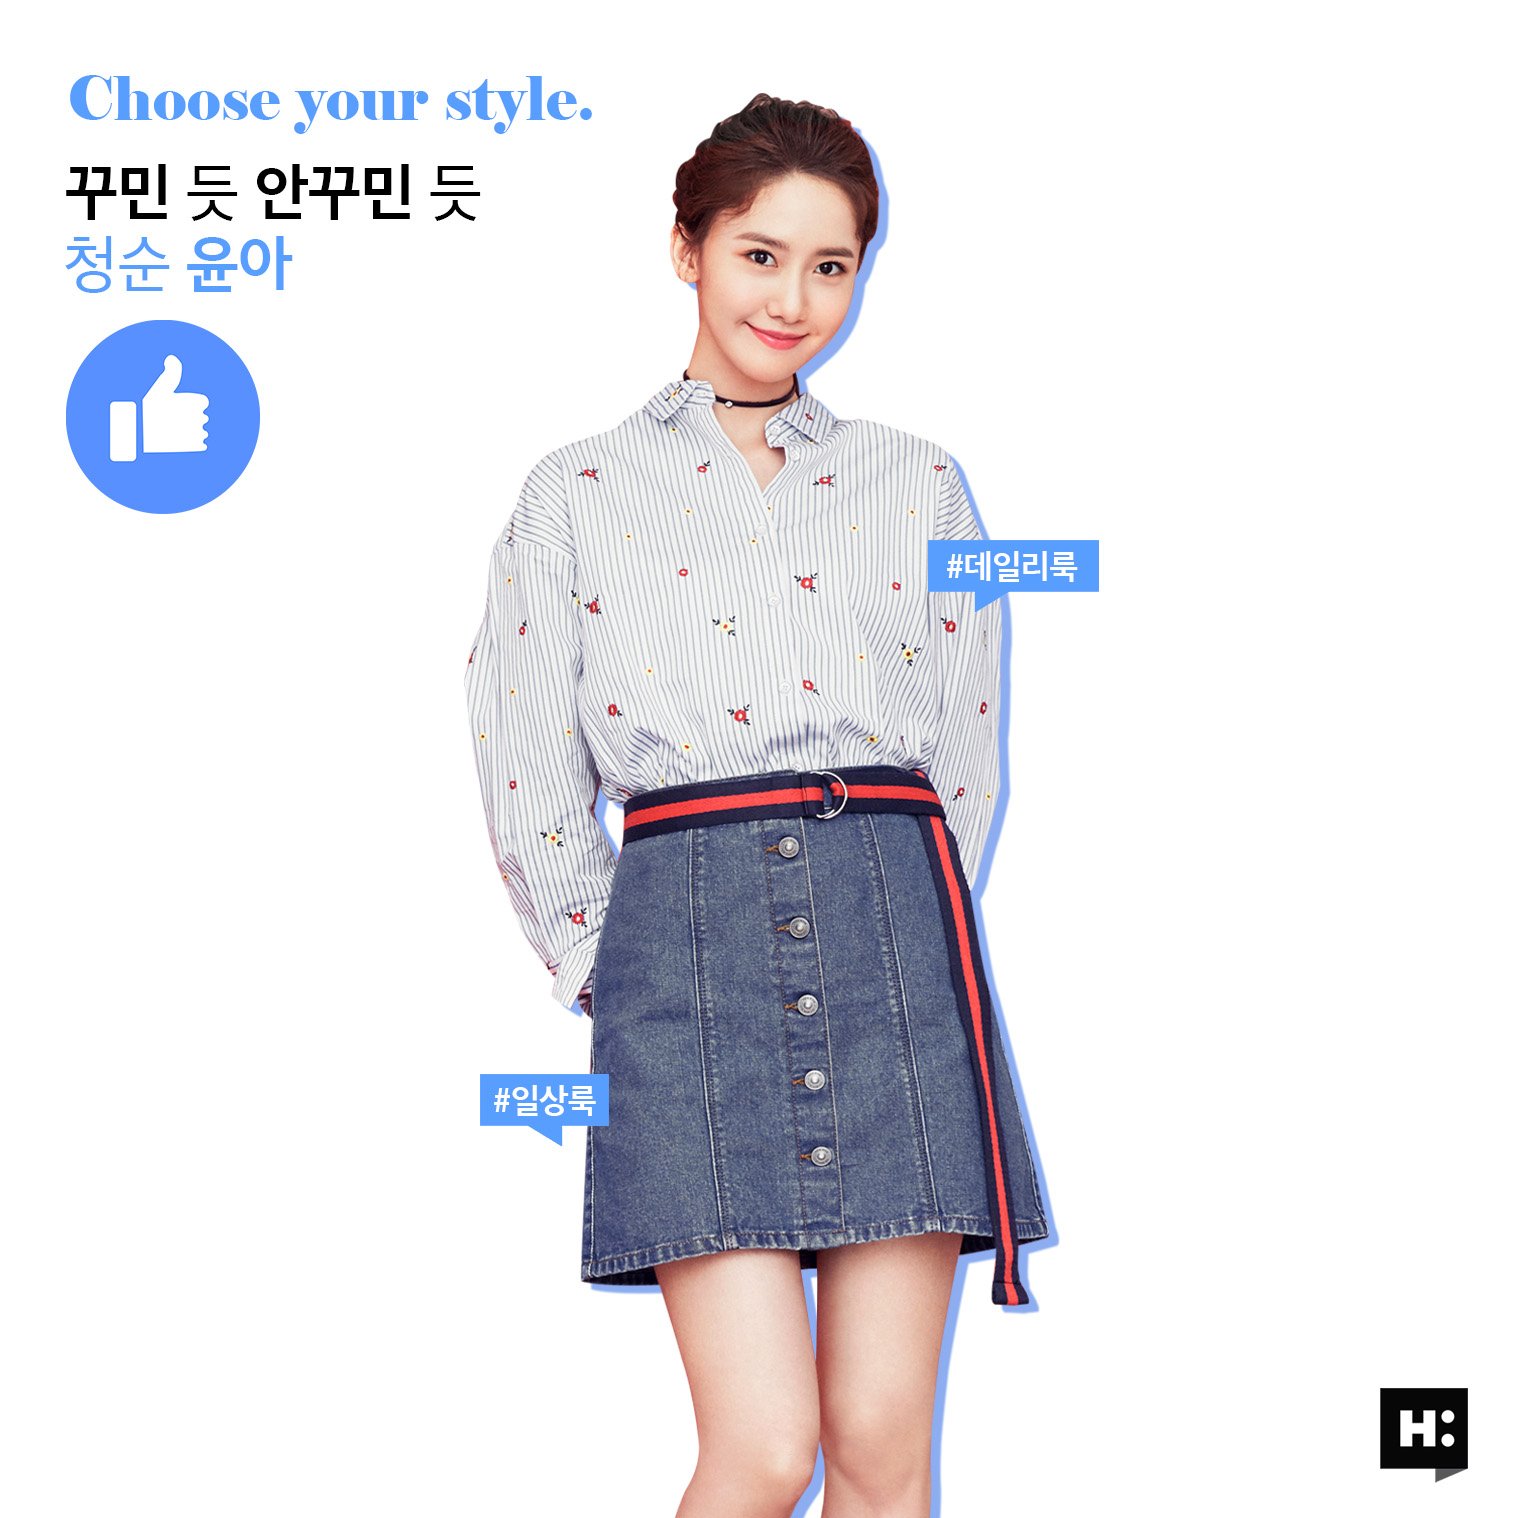 [OTHER][27-07-2015]YoonA trở thành người mẫu mới cho dòng thời trang "H:CONNECT" - Page 7 JwWyxQ1R2R-3000x3000